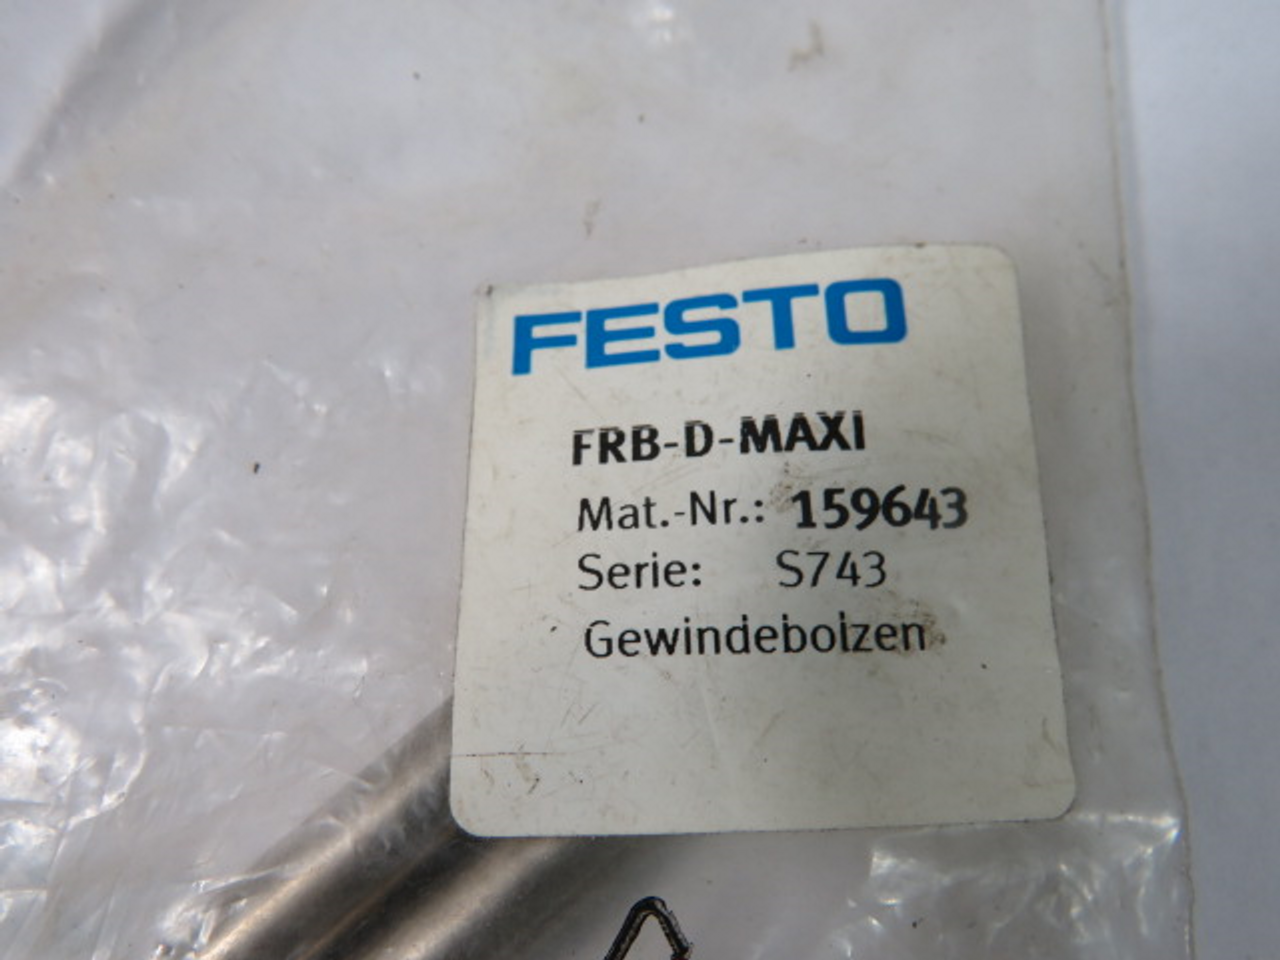 Festo FRB-D-MAXI 159643 Threaded Bolt 7mm Dia ! NWB !